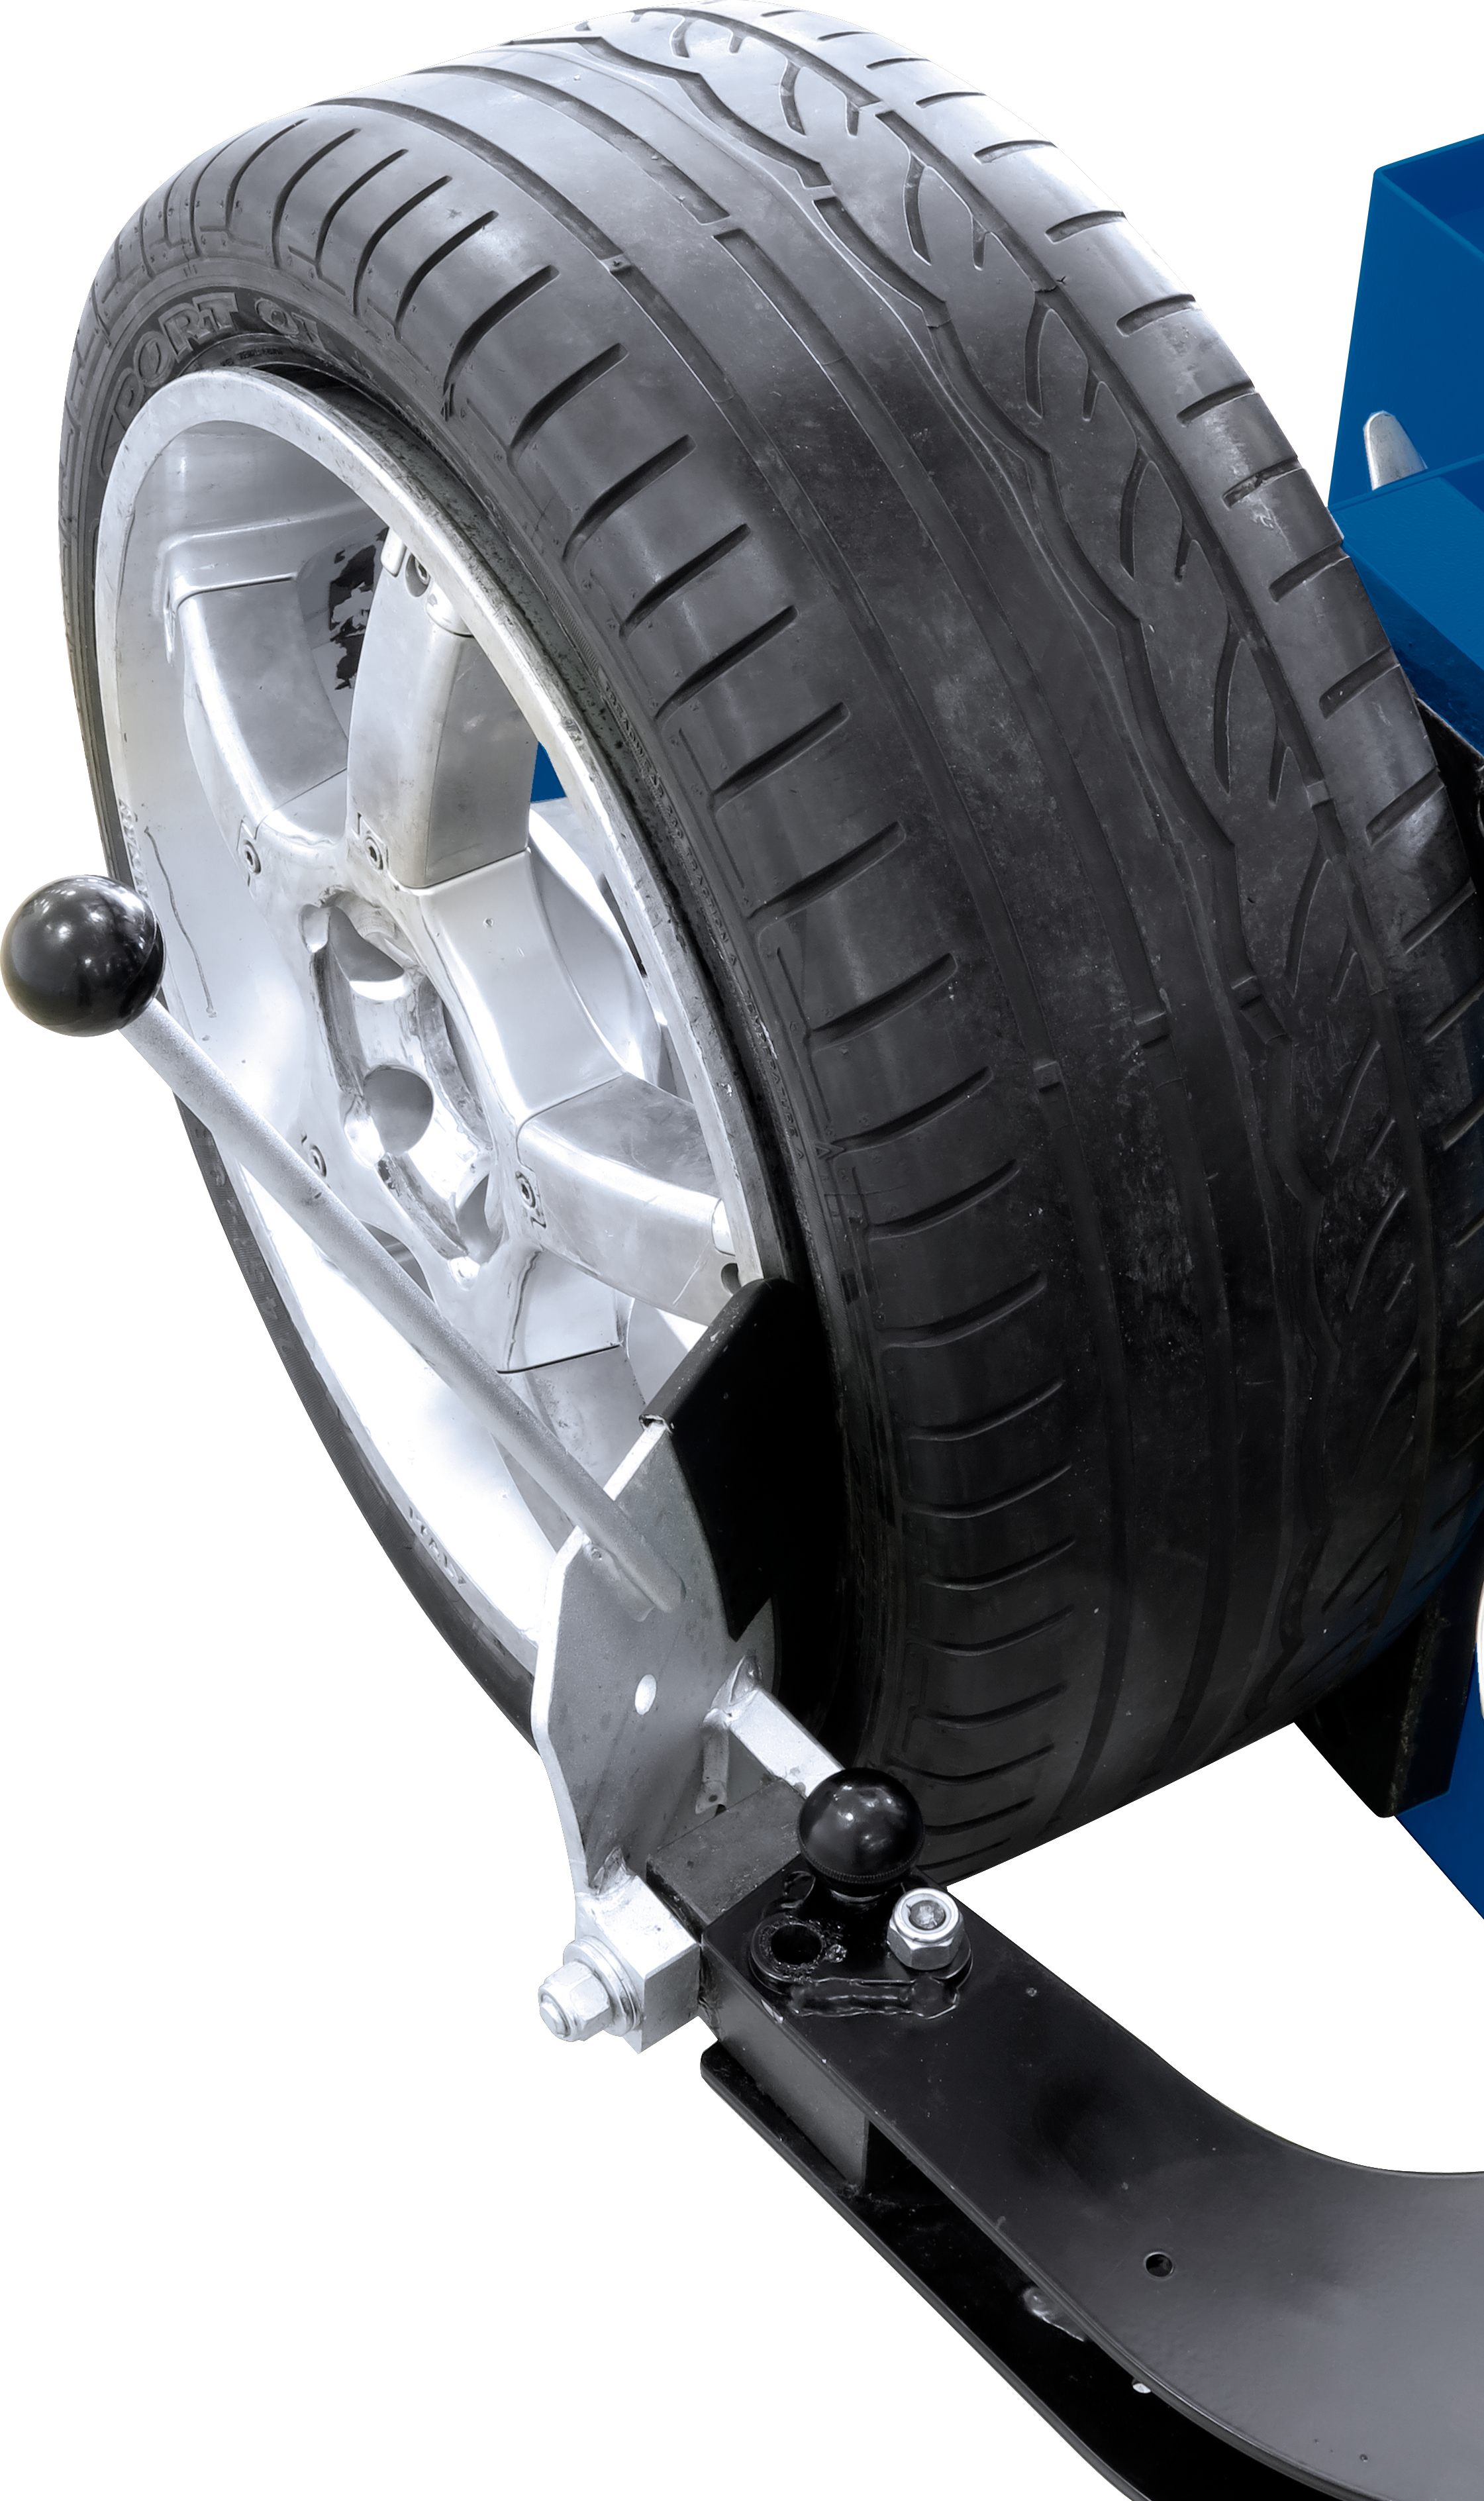 Repousse talon pour démontage pneu auto / moto